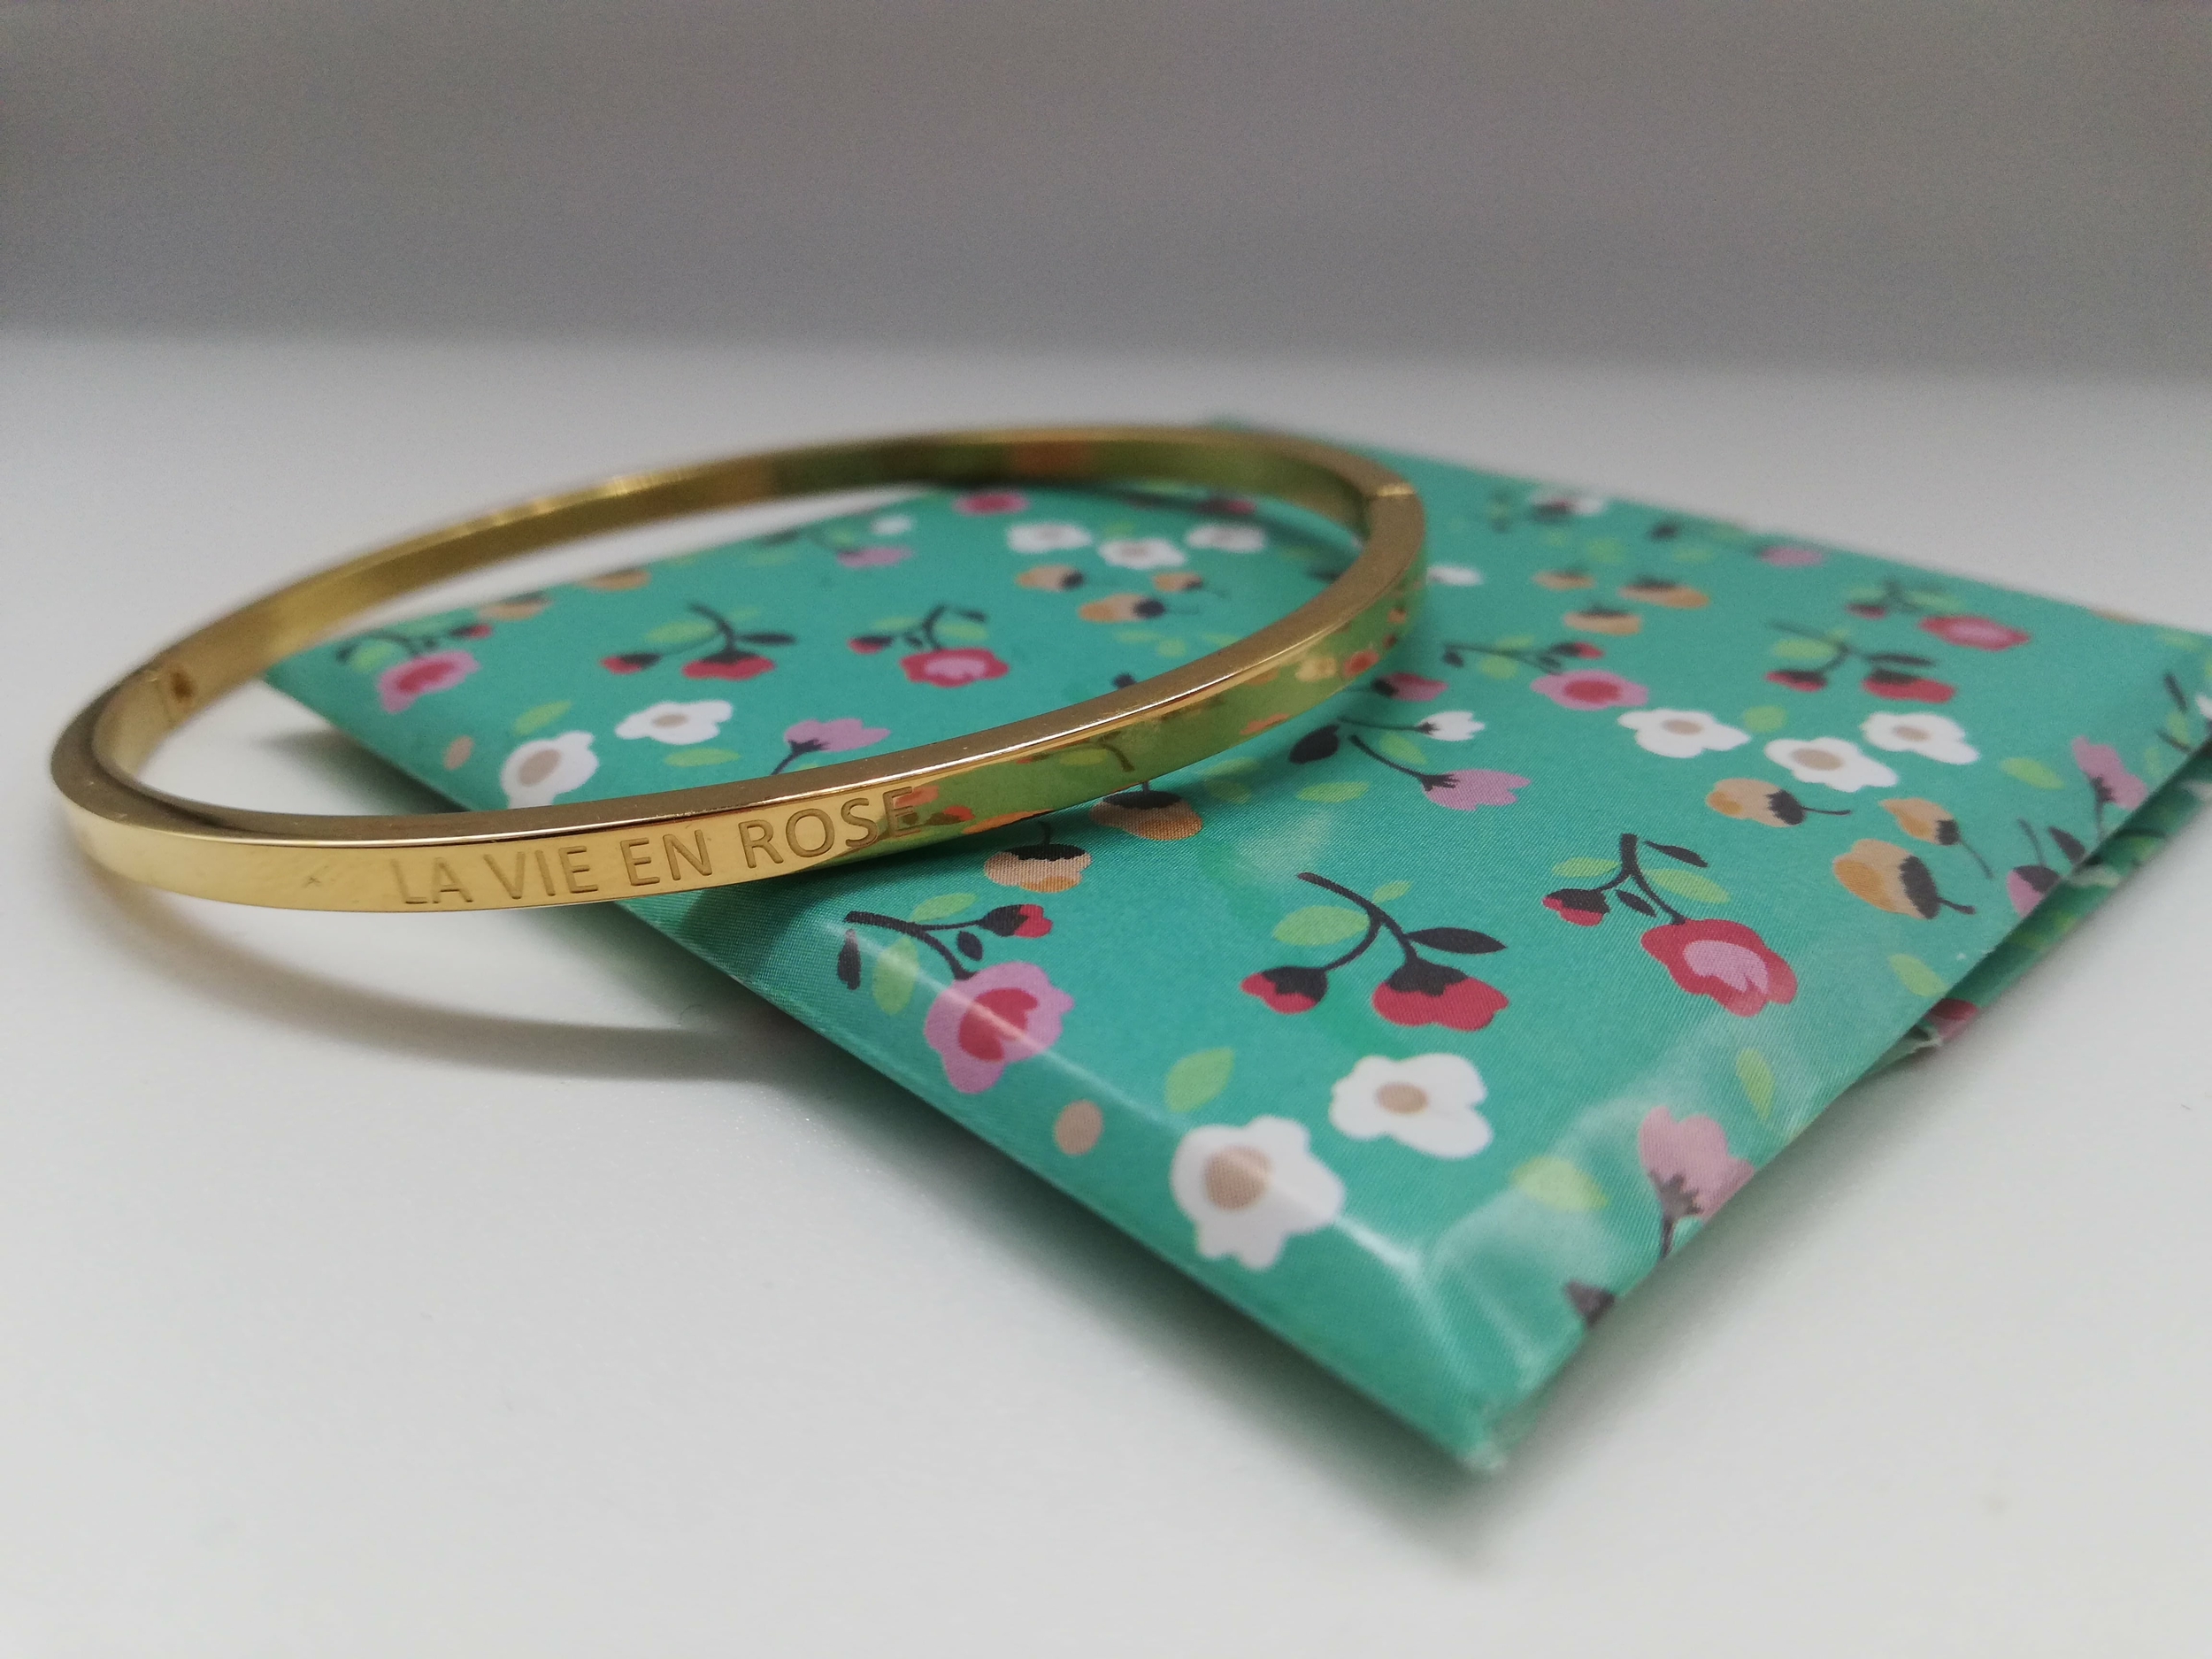 cadeau a offrir a une future mariee bracelet personnalisé La vie en rose